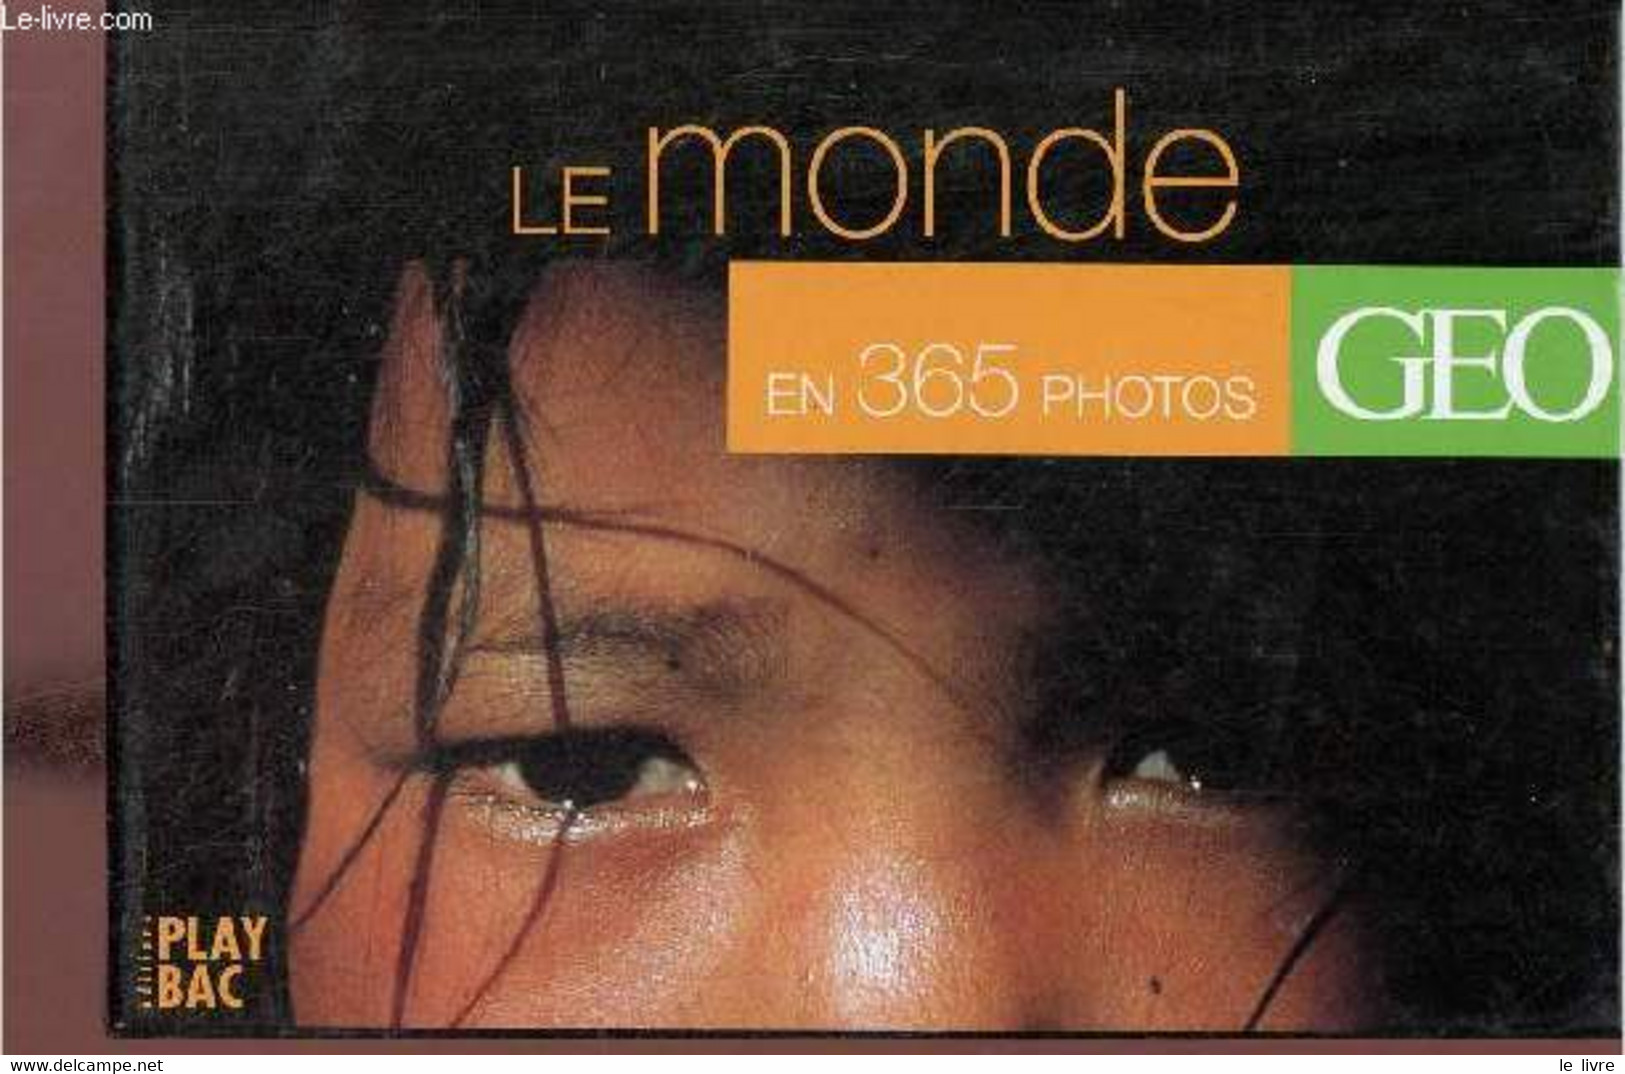 Le Monde En 365 Photos - Geo. - Collectif - 2001 - Agende & Calendari